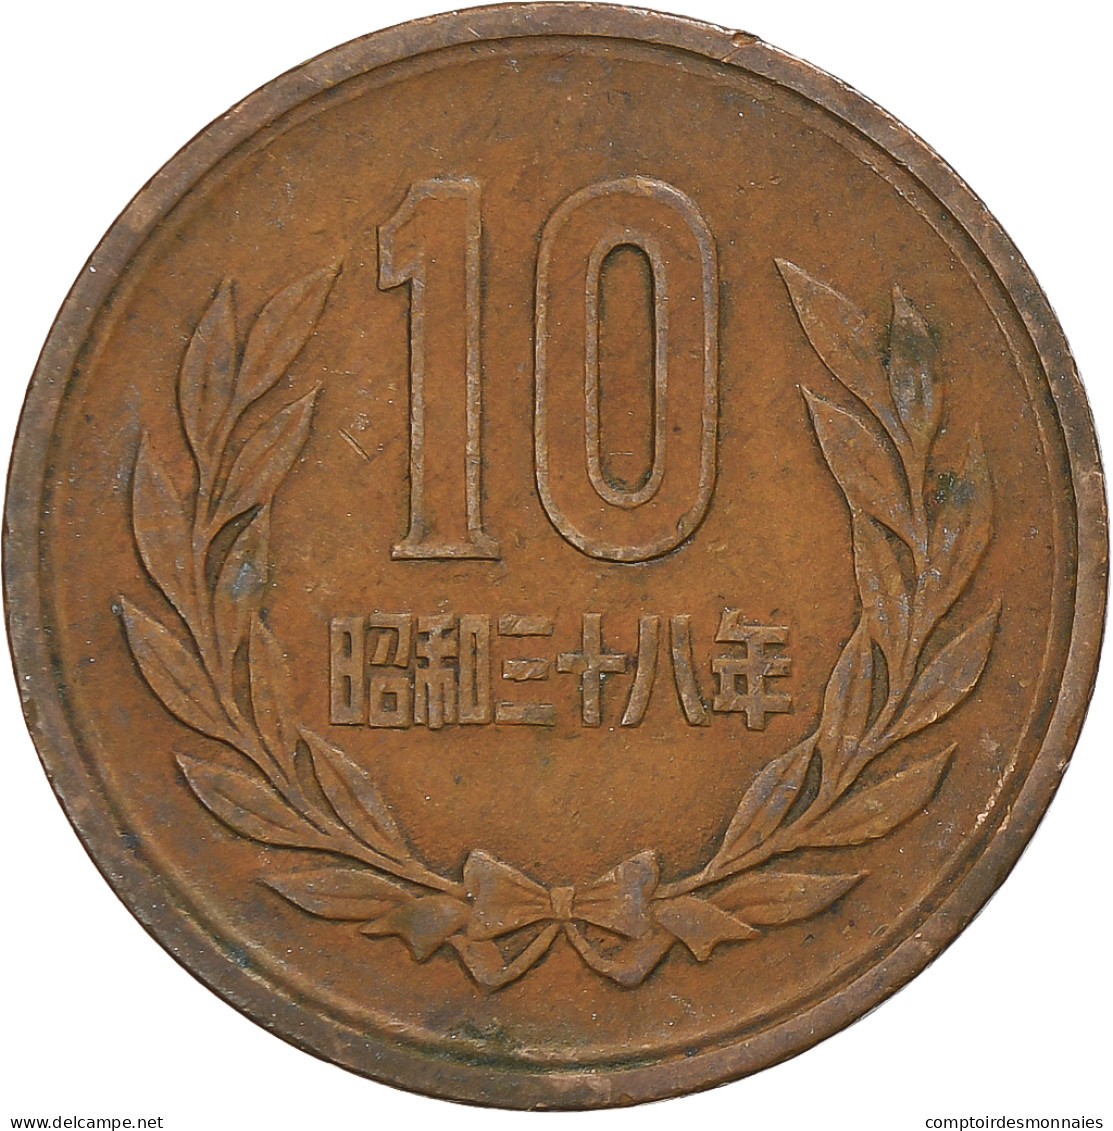 Japon, 10 Yen, 1966 - Japan